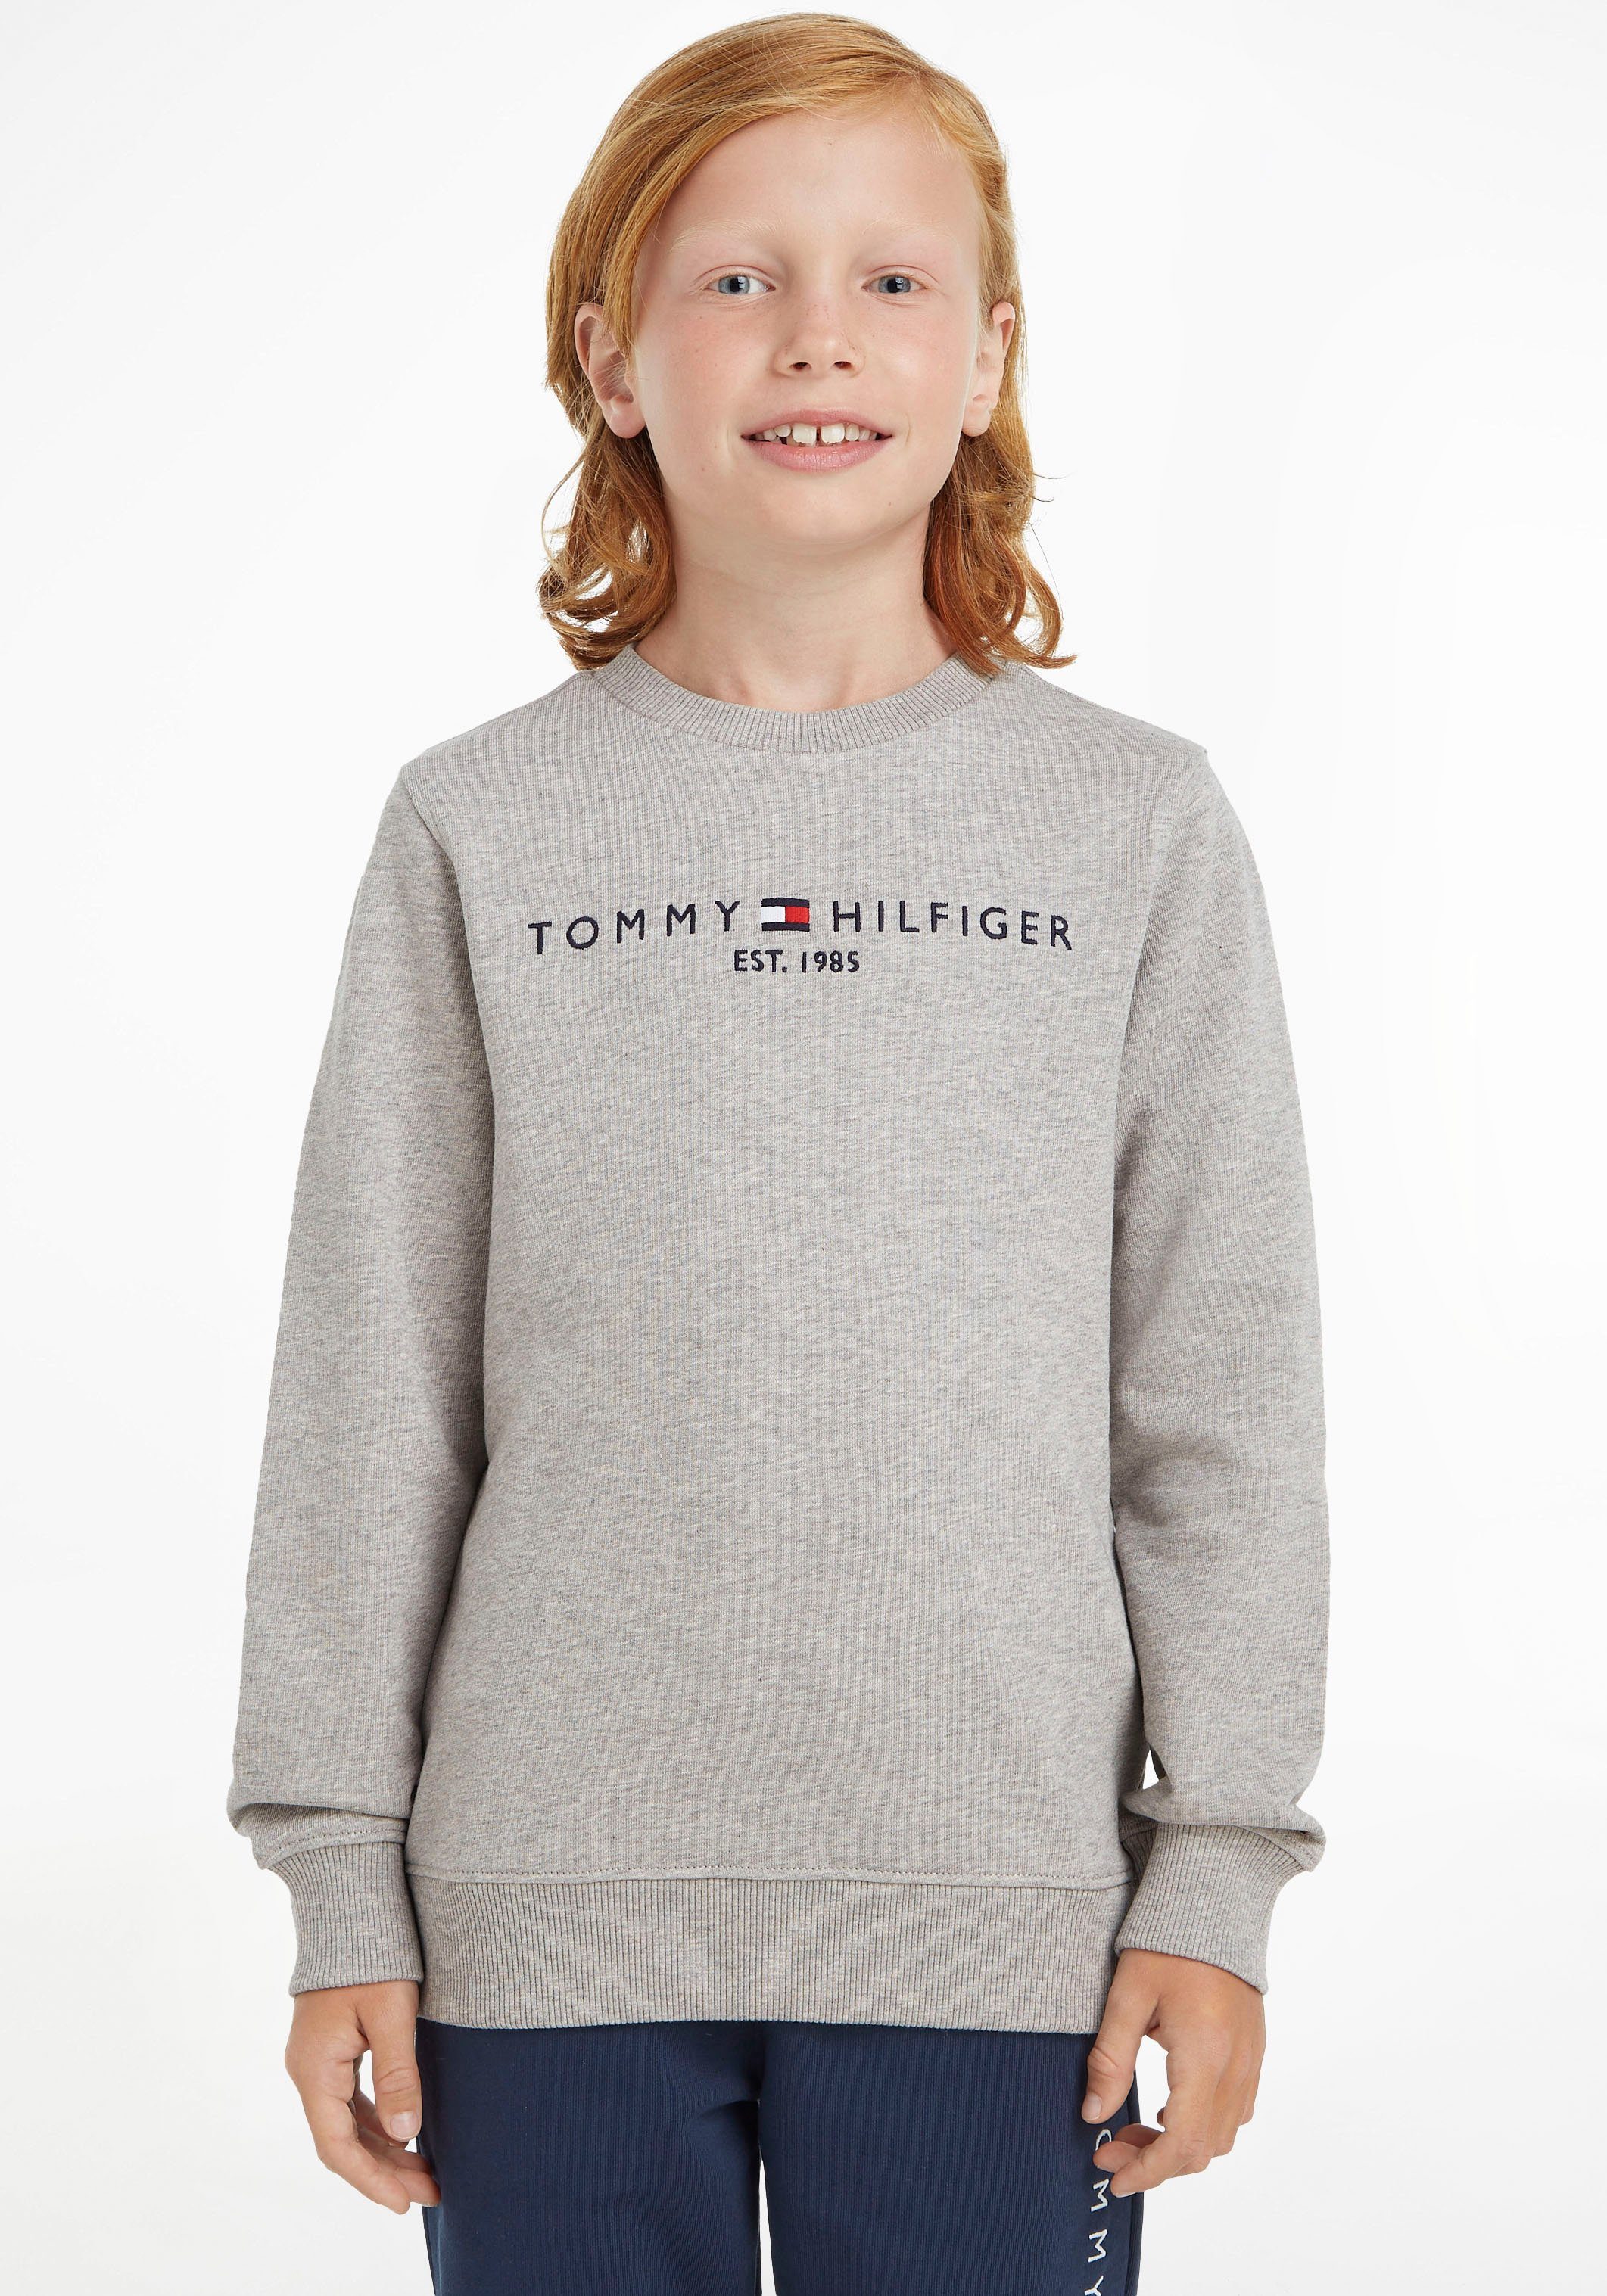 Tommy Hilfiger Sweatshirt MiniMe,für SWEATSHIRT und Mädchen Kids Junior Kinder ESSENTIAL Jungen